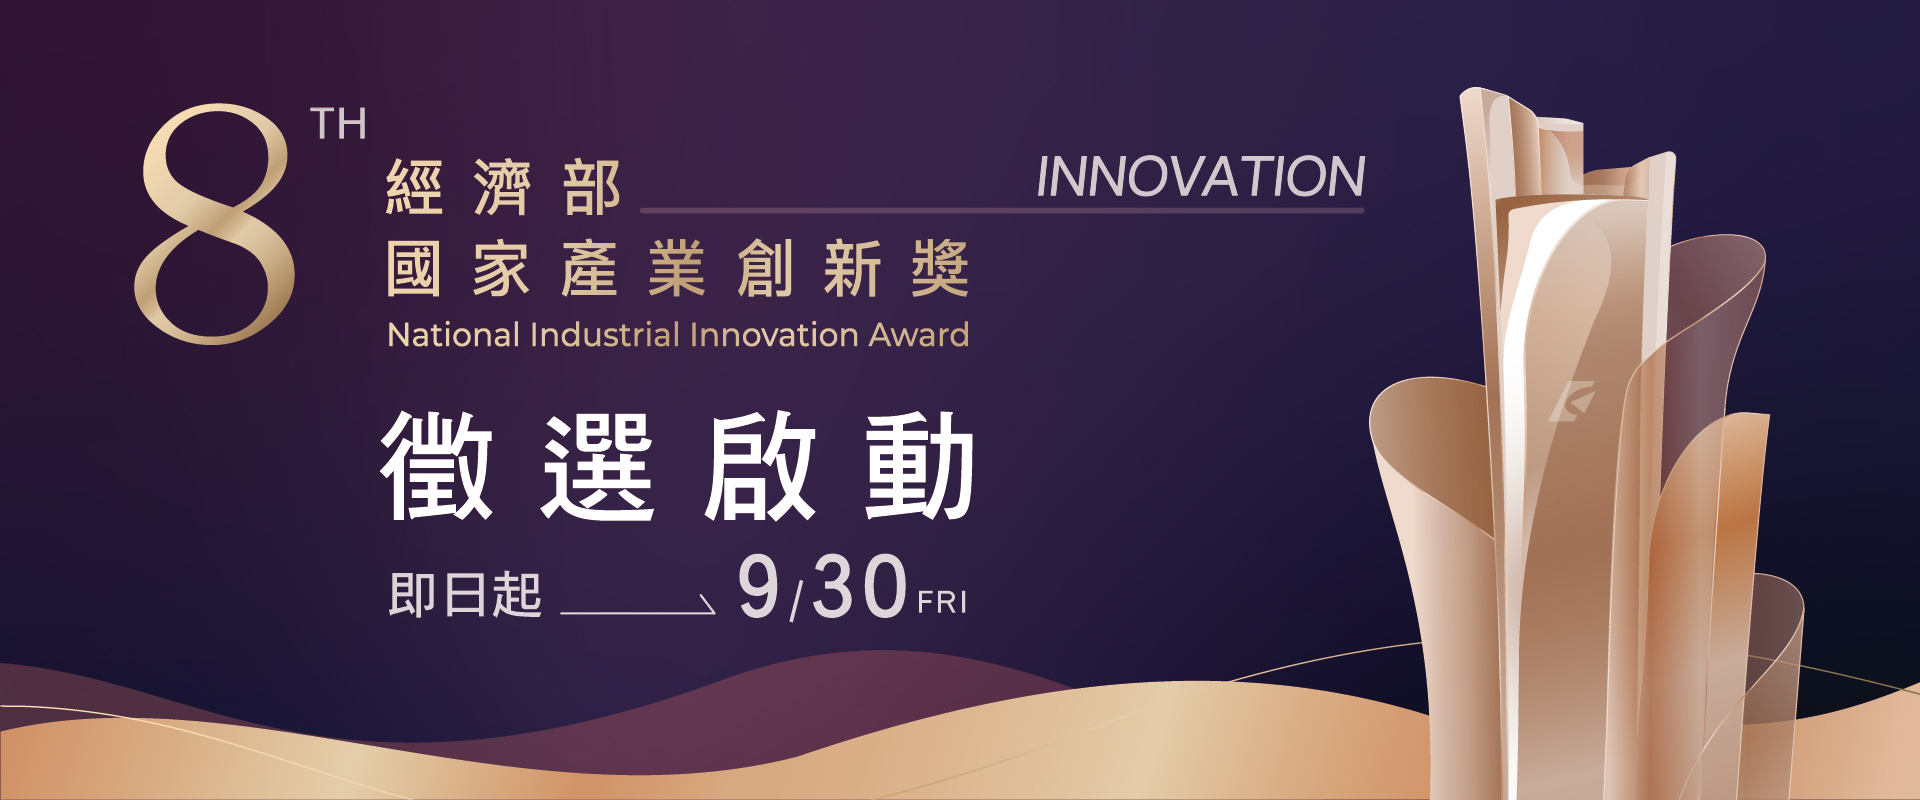 第八屆經濟部國家產業創新獎